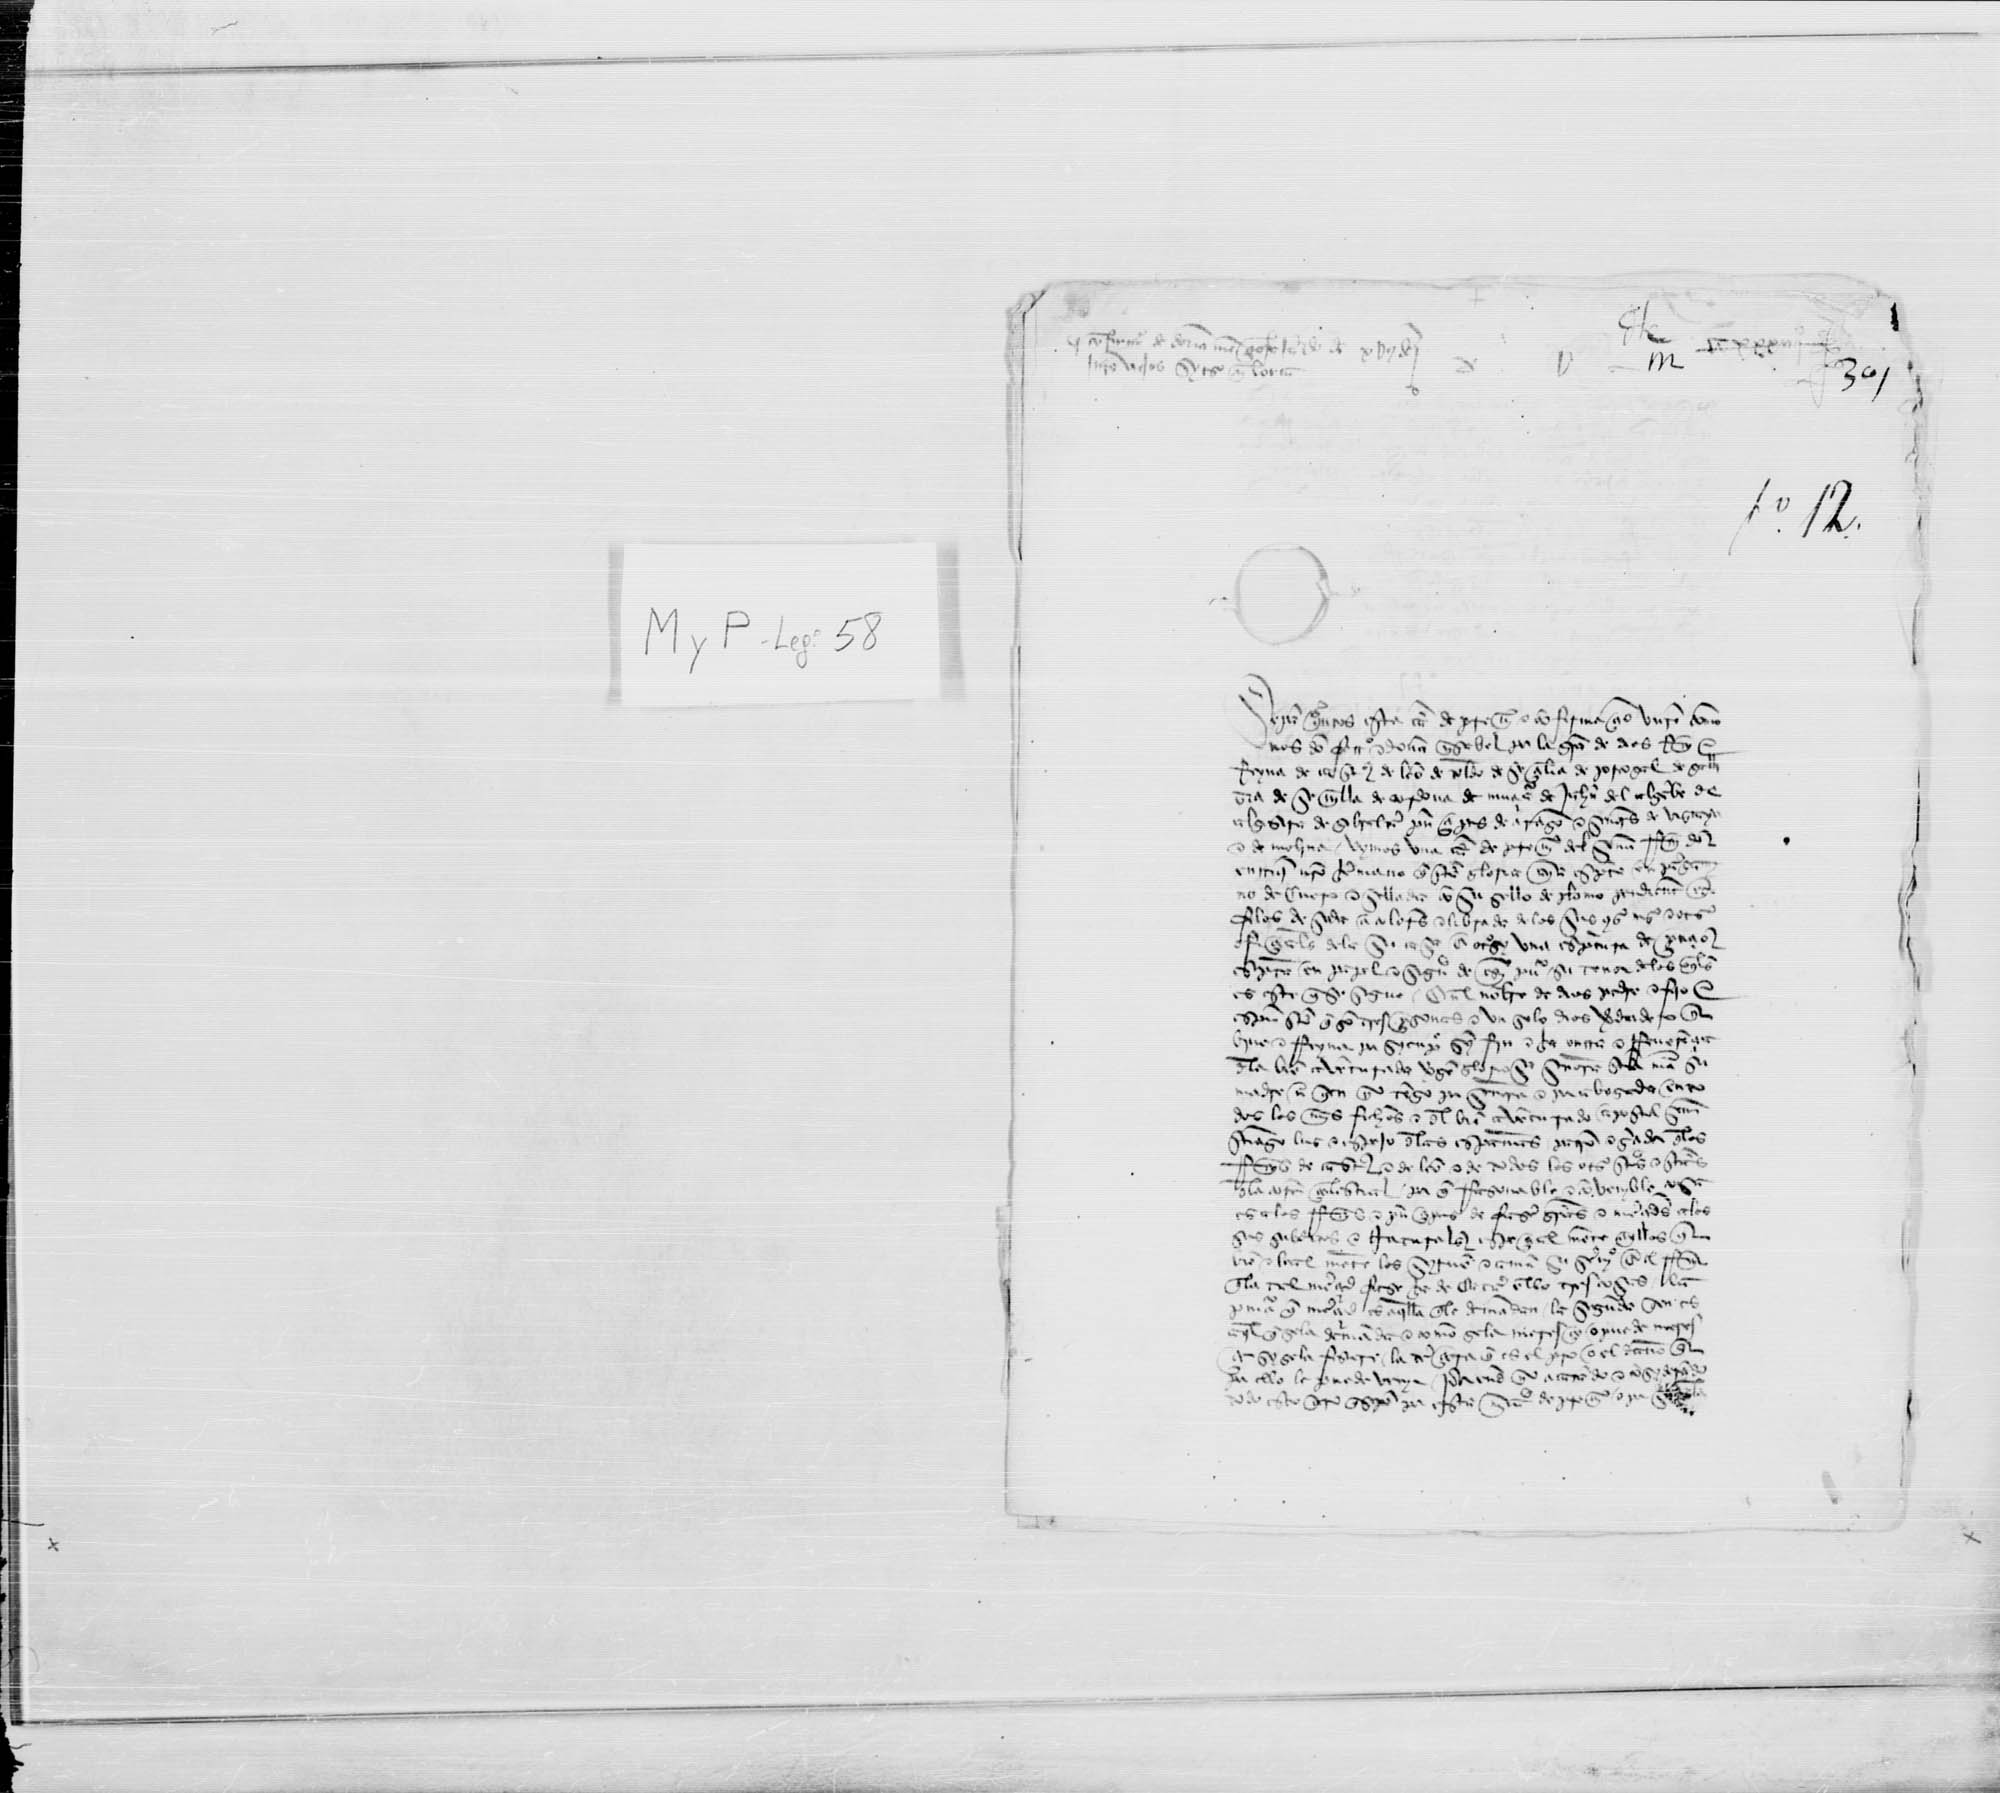 Carta de privilegio y confirmación de los Reyes Católicos de un  juro de 10.000 mrs a favor de doña Mencía Fajardo situado en las tercias y alcabalas de Lorca.